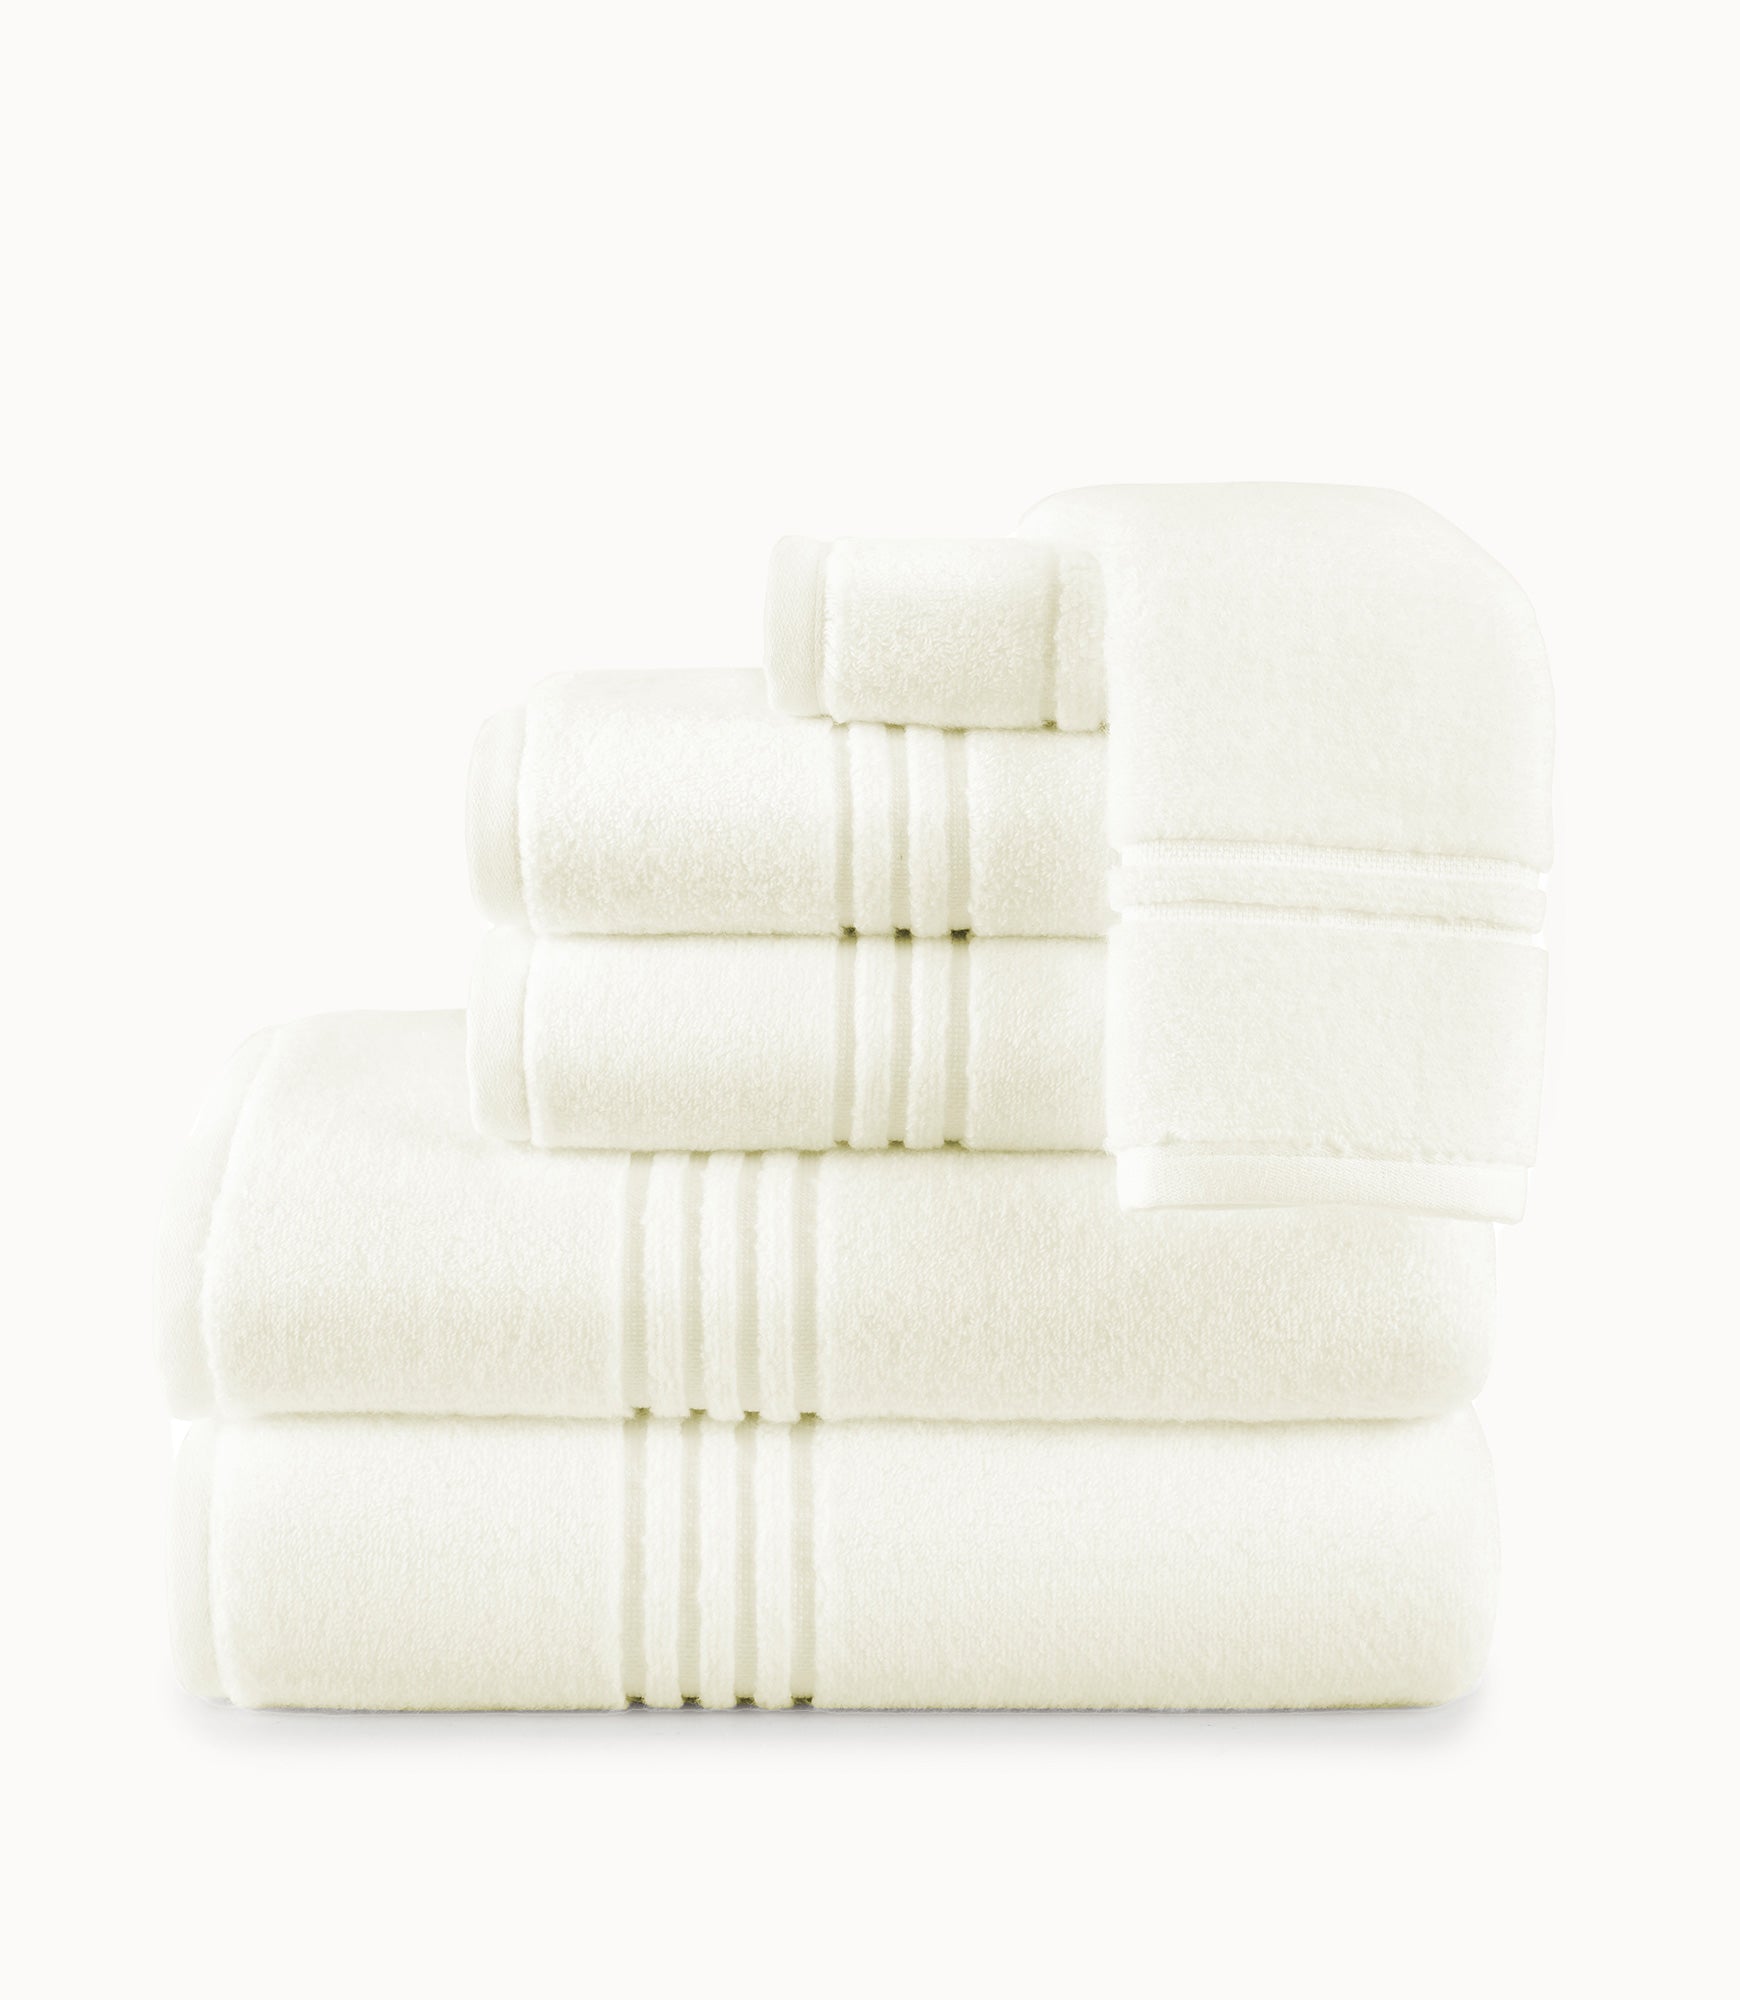 Chelsea Bath Towel Collection - Premium Bath Linens